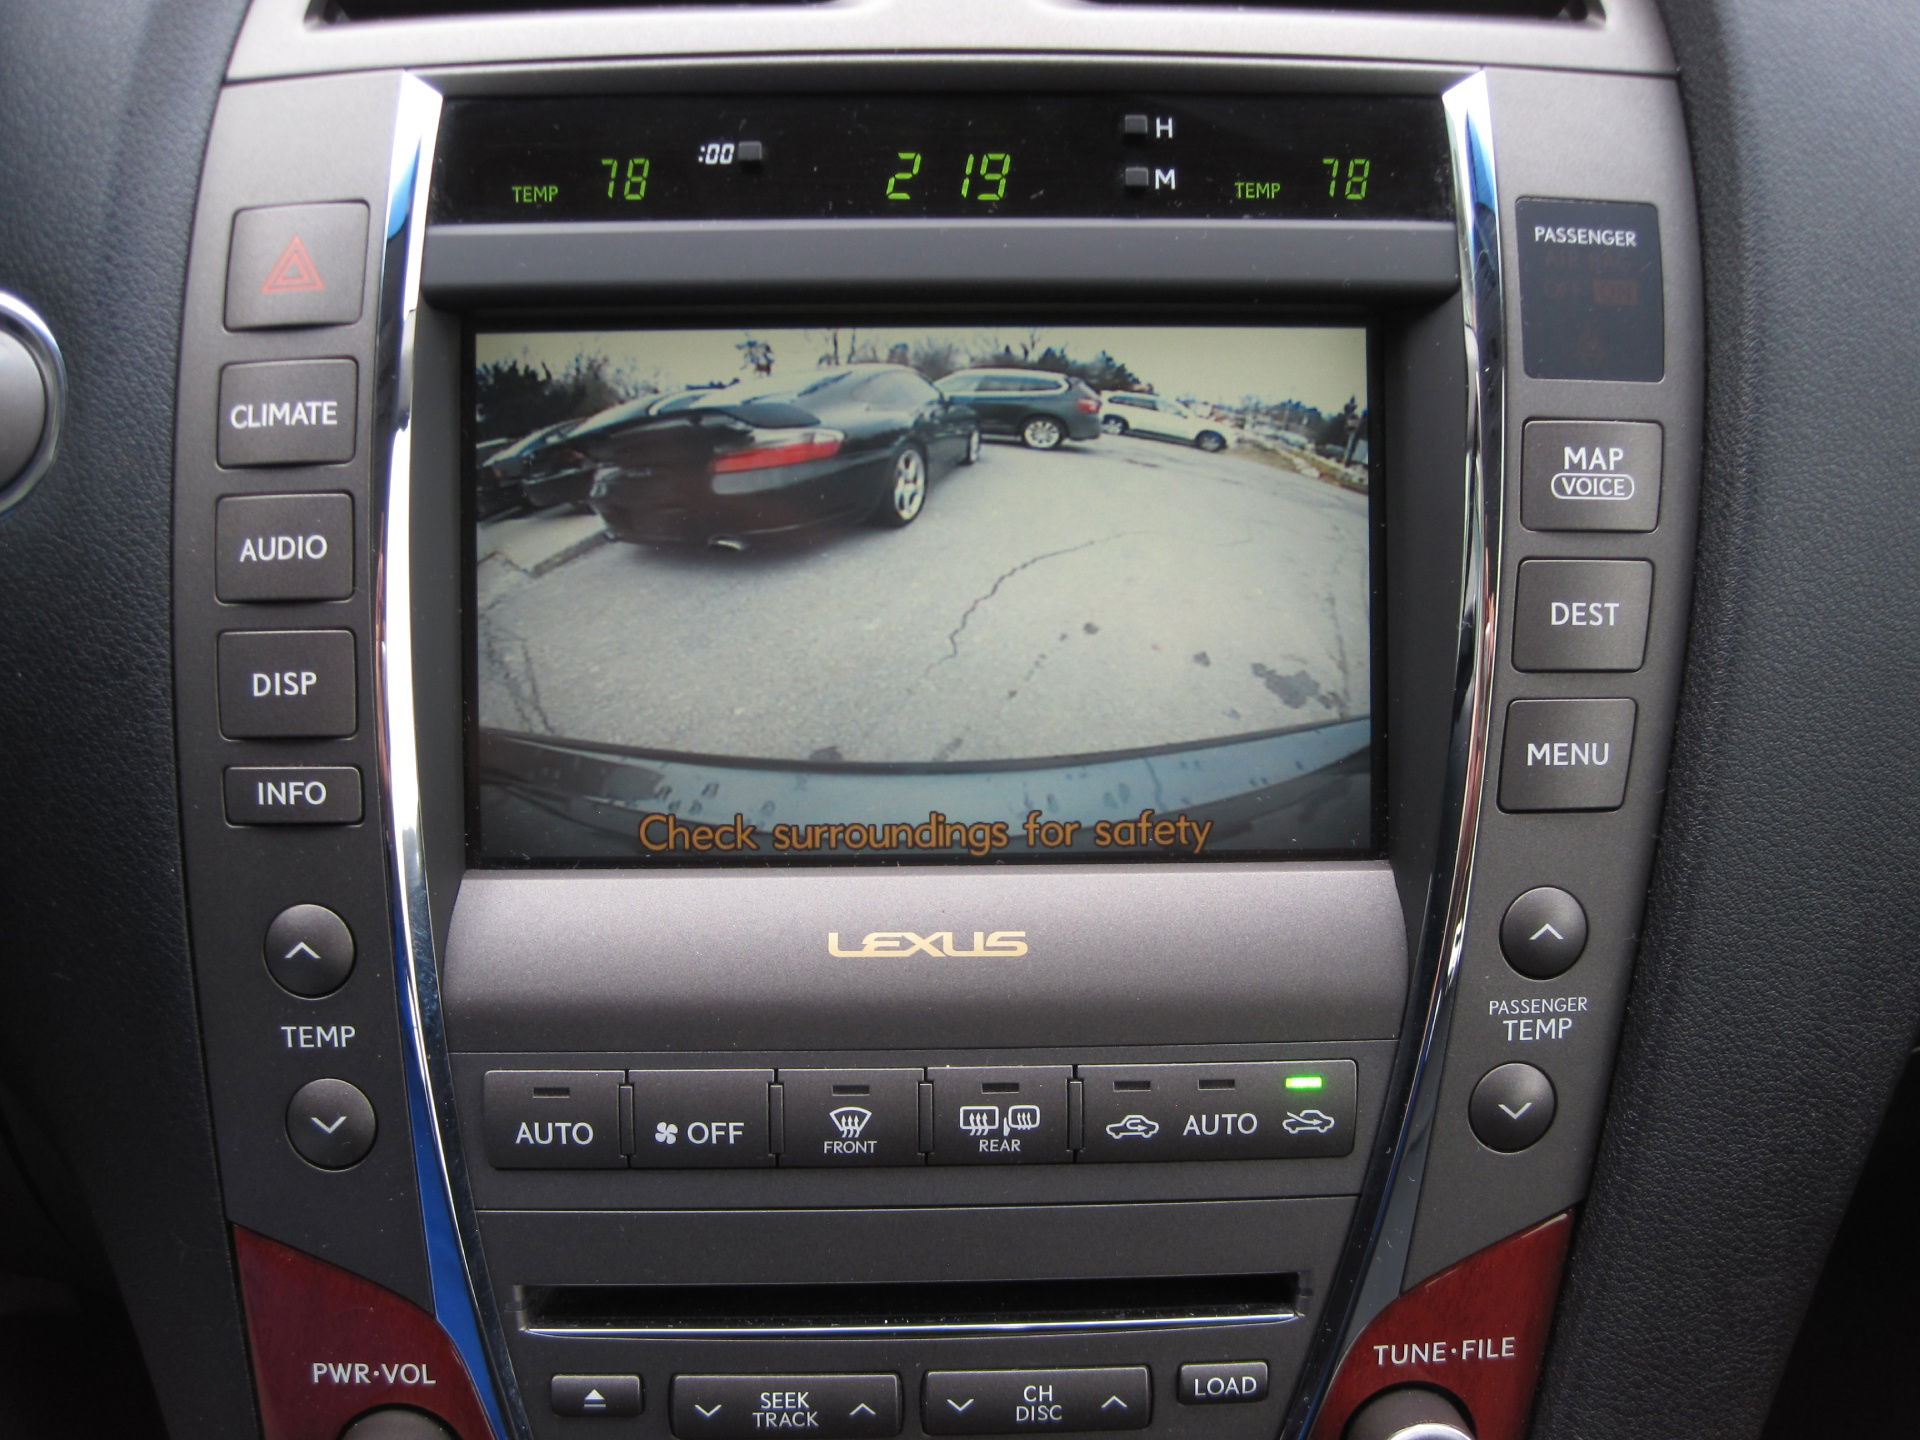 2008 Lexus ES 350 rear camera  view Via Bul Auto Sales.